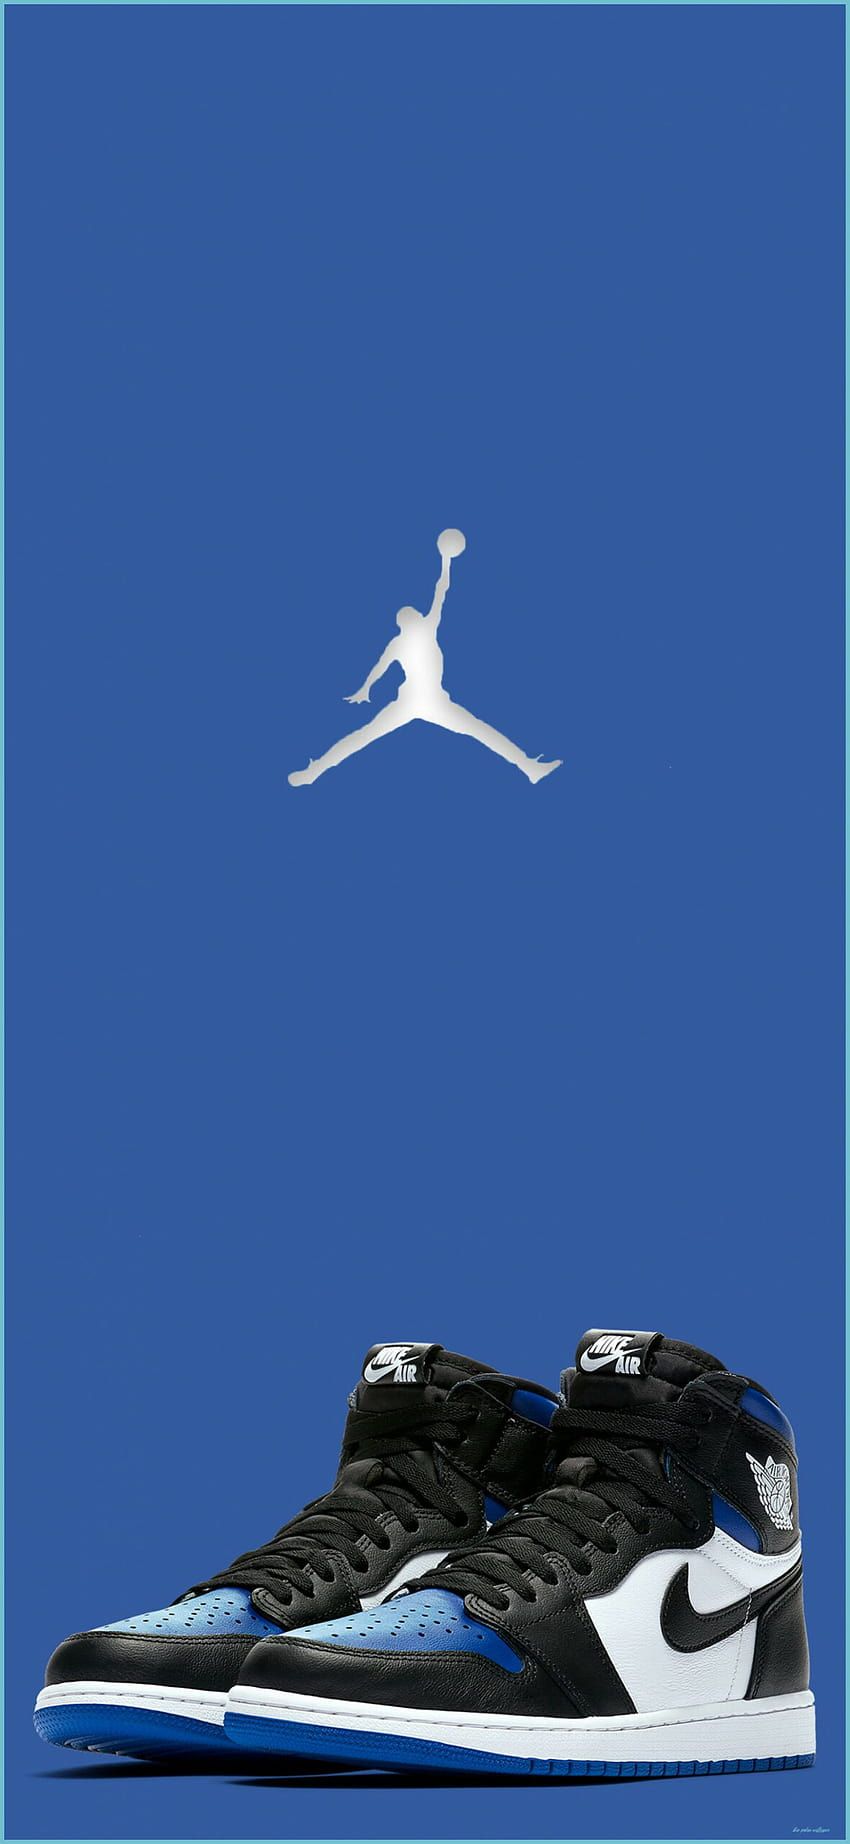 Air Jordan 1 High OG 